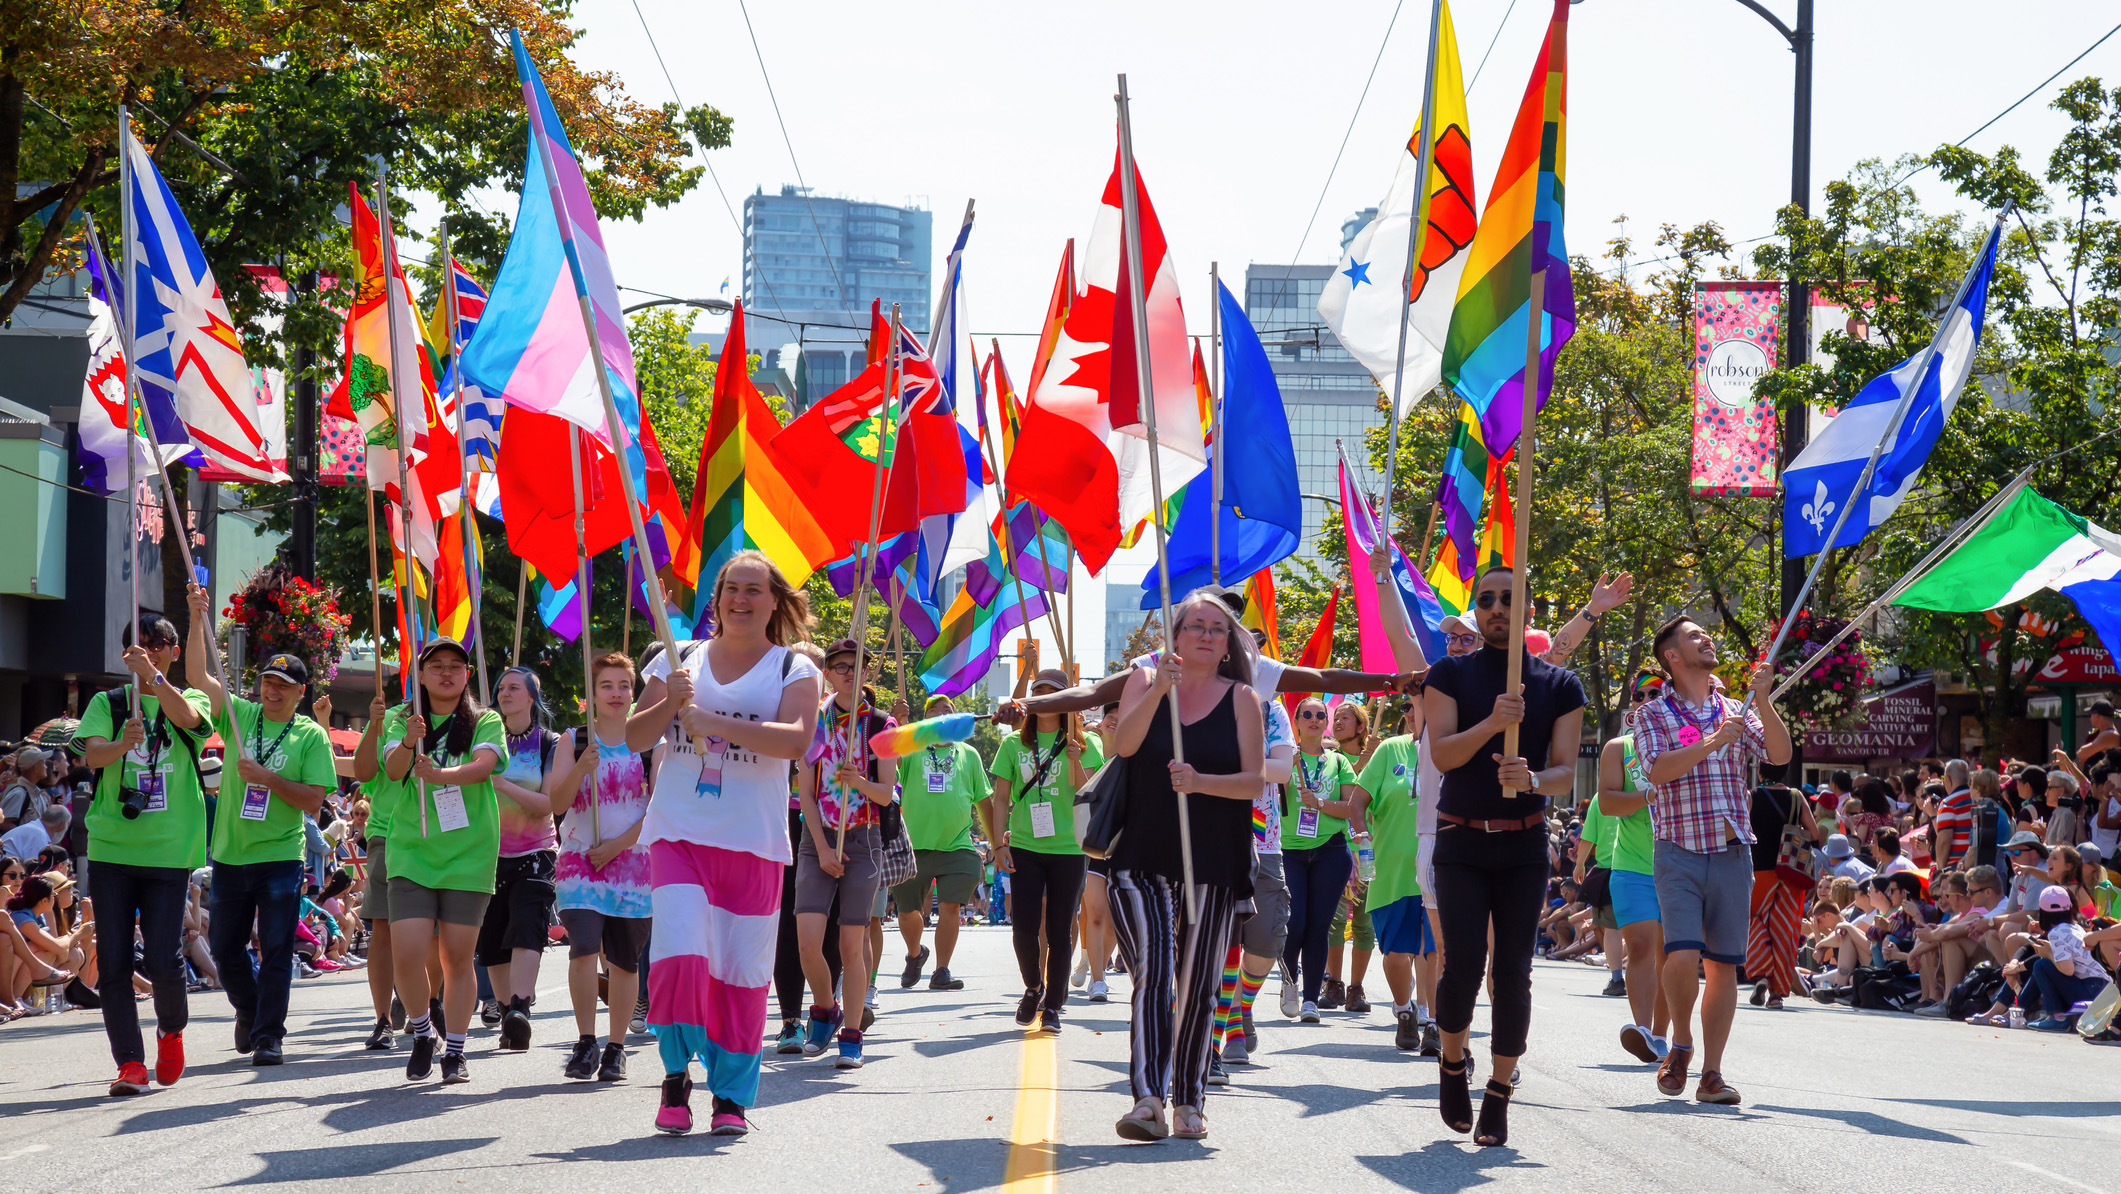 Dans le centre-ville de Vancouver, des participants au Défilé de la fierté brandissent des drapeaux arc-en-ciel, des drapeaux de la fierté transgenre et des drapeaux du Canada et des provinces et territoires canadiens.